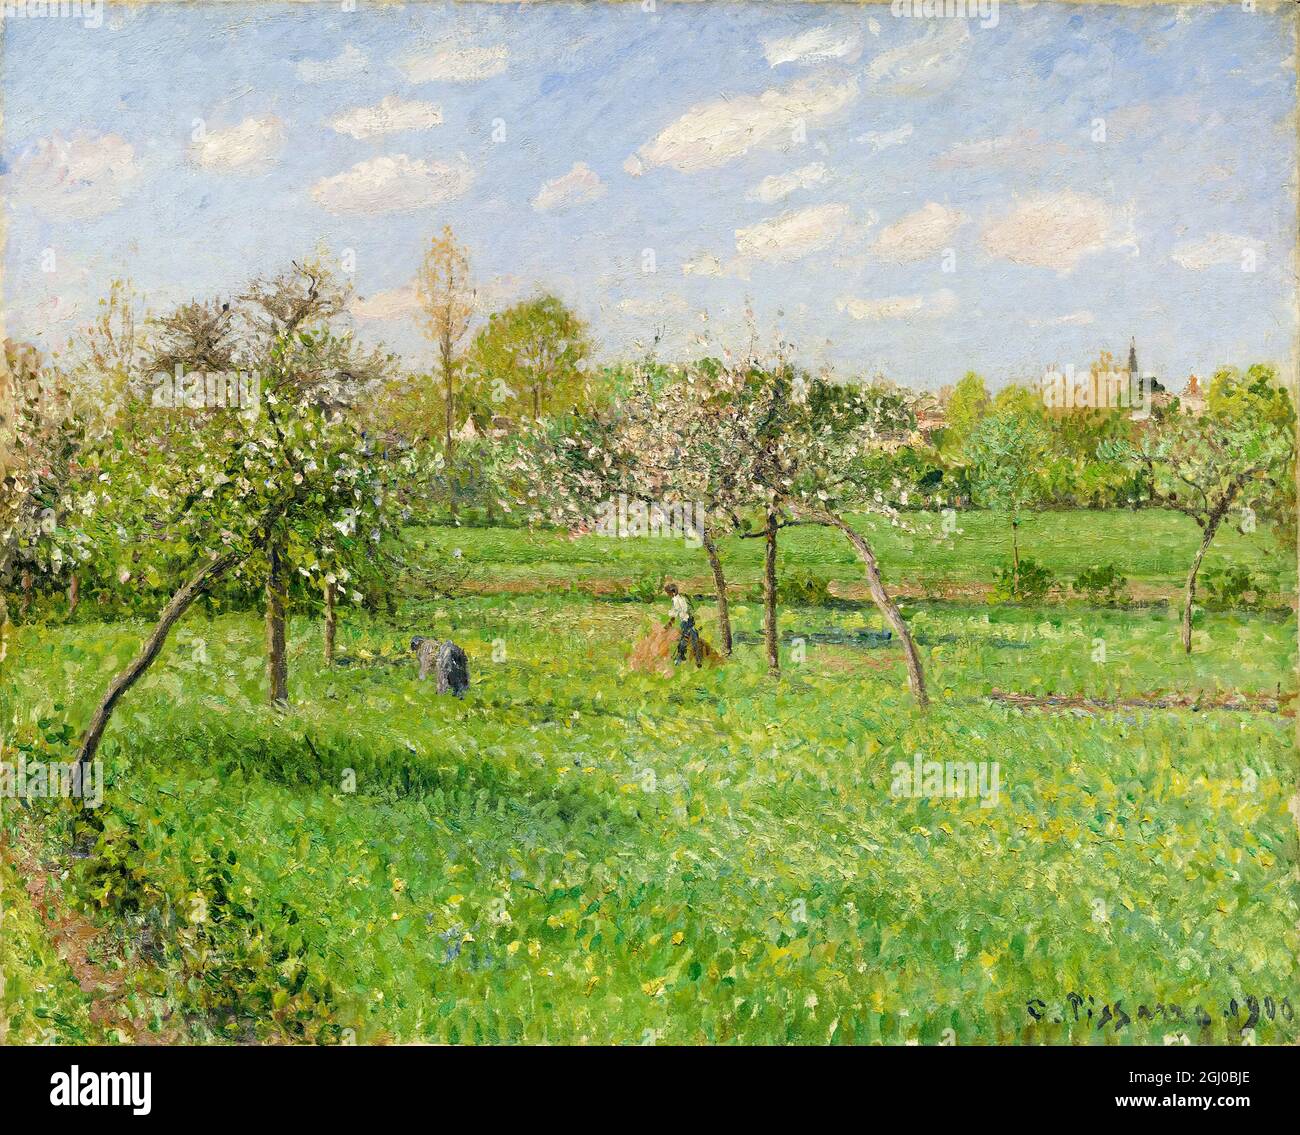 Camille Pissarro, matin du printemps, Nuageux, Eragny, peinture de paysage, 1900 Banque D'Images